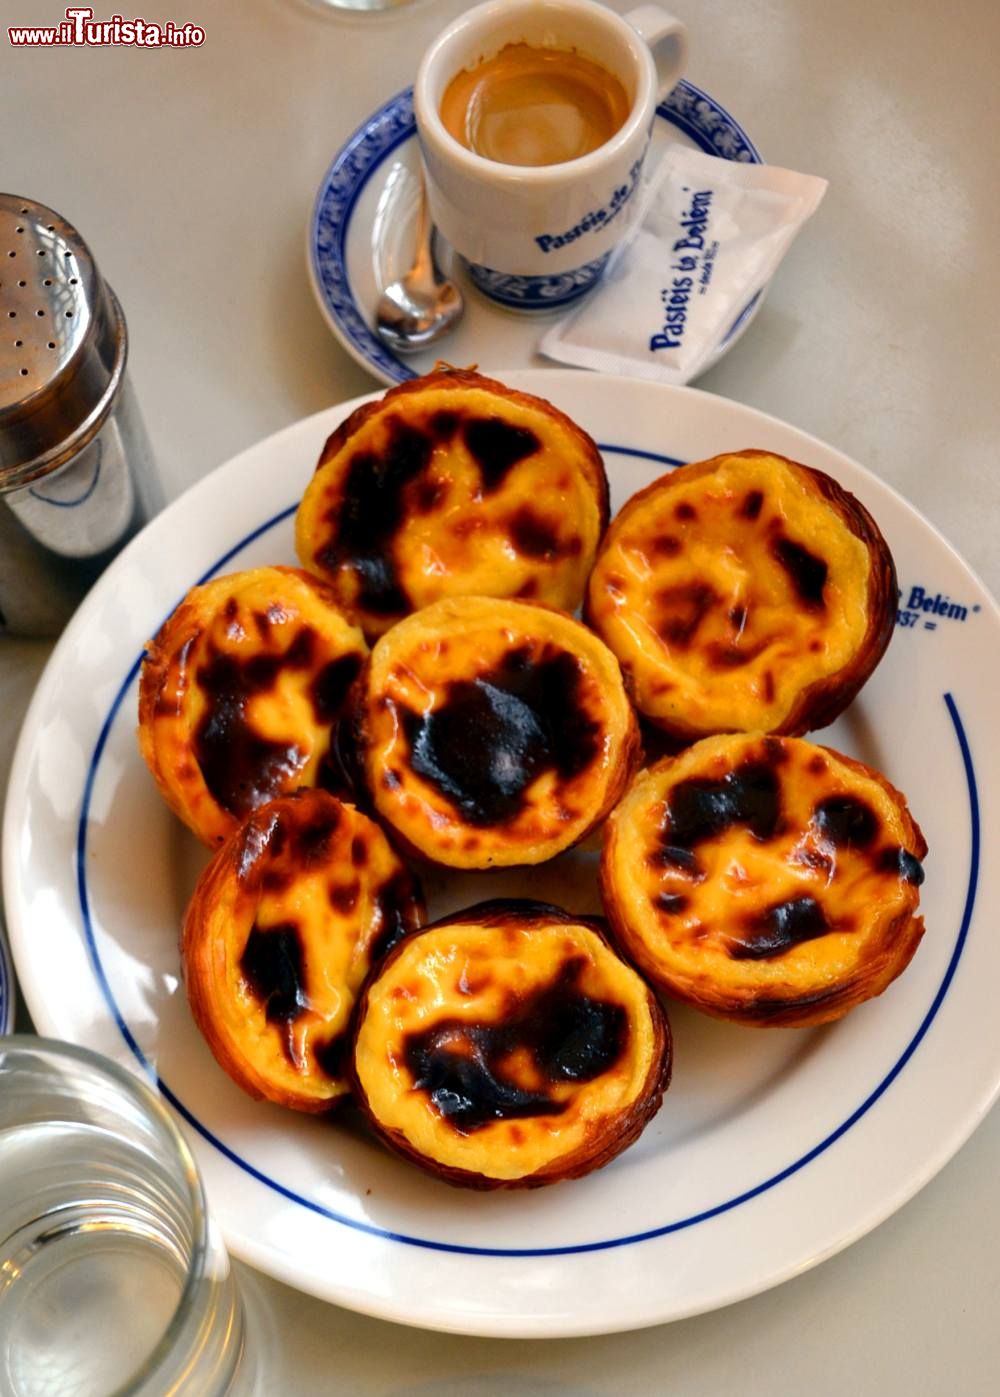 Immagine I famosi Pastéis de Belém, dolcetti alla crema tipici di Lisbona, vengono prodotti nell'Antiga Confeitaria de Belém, a pochi passi dal Mnastero dos Jerónimos.